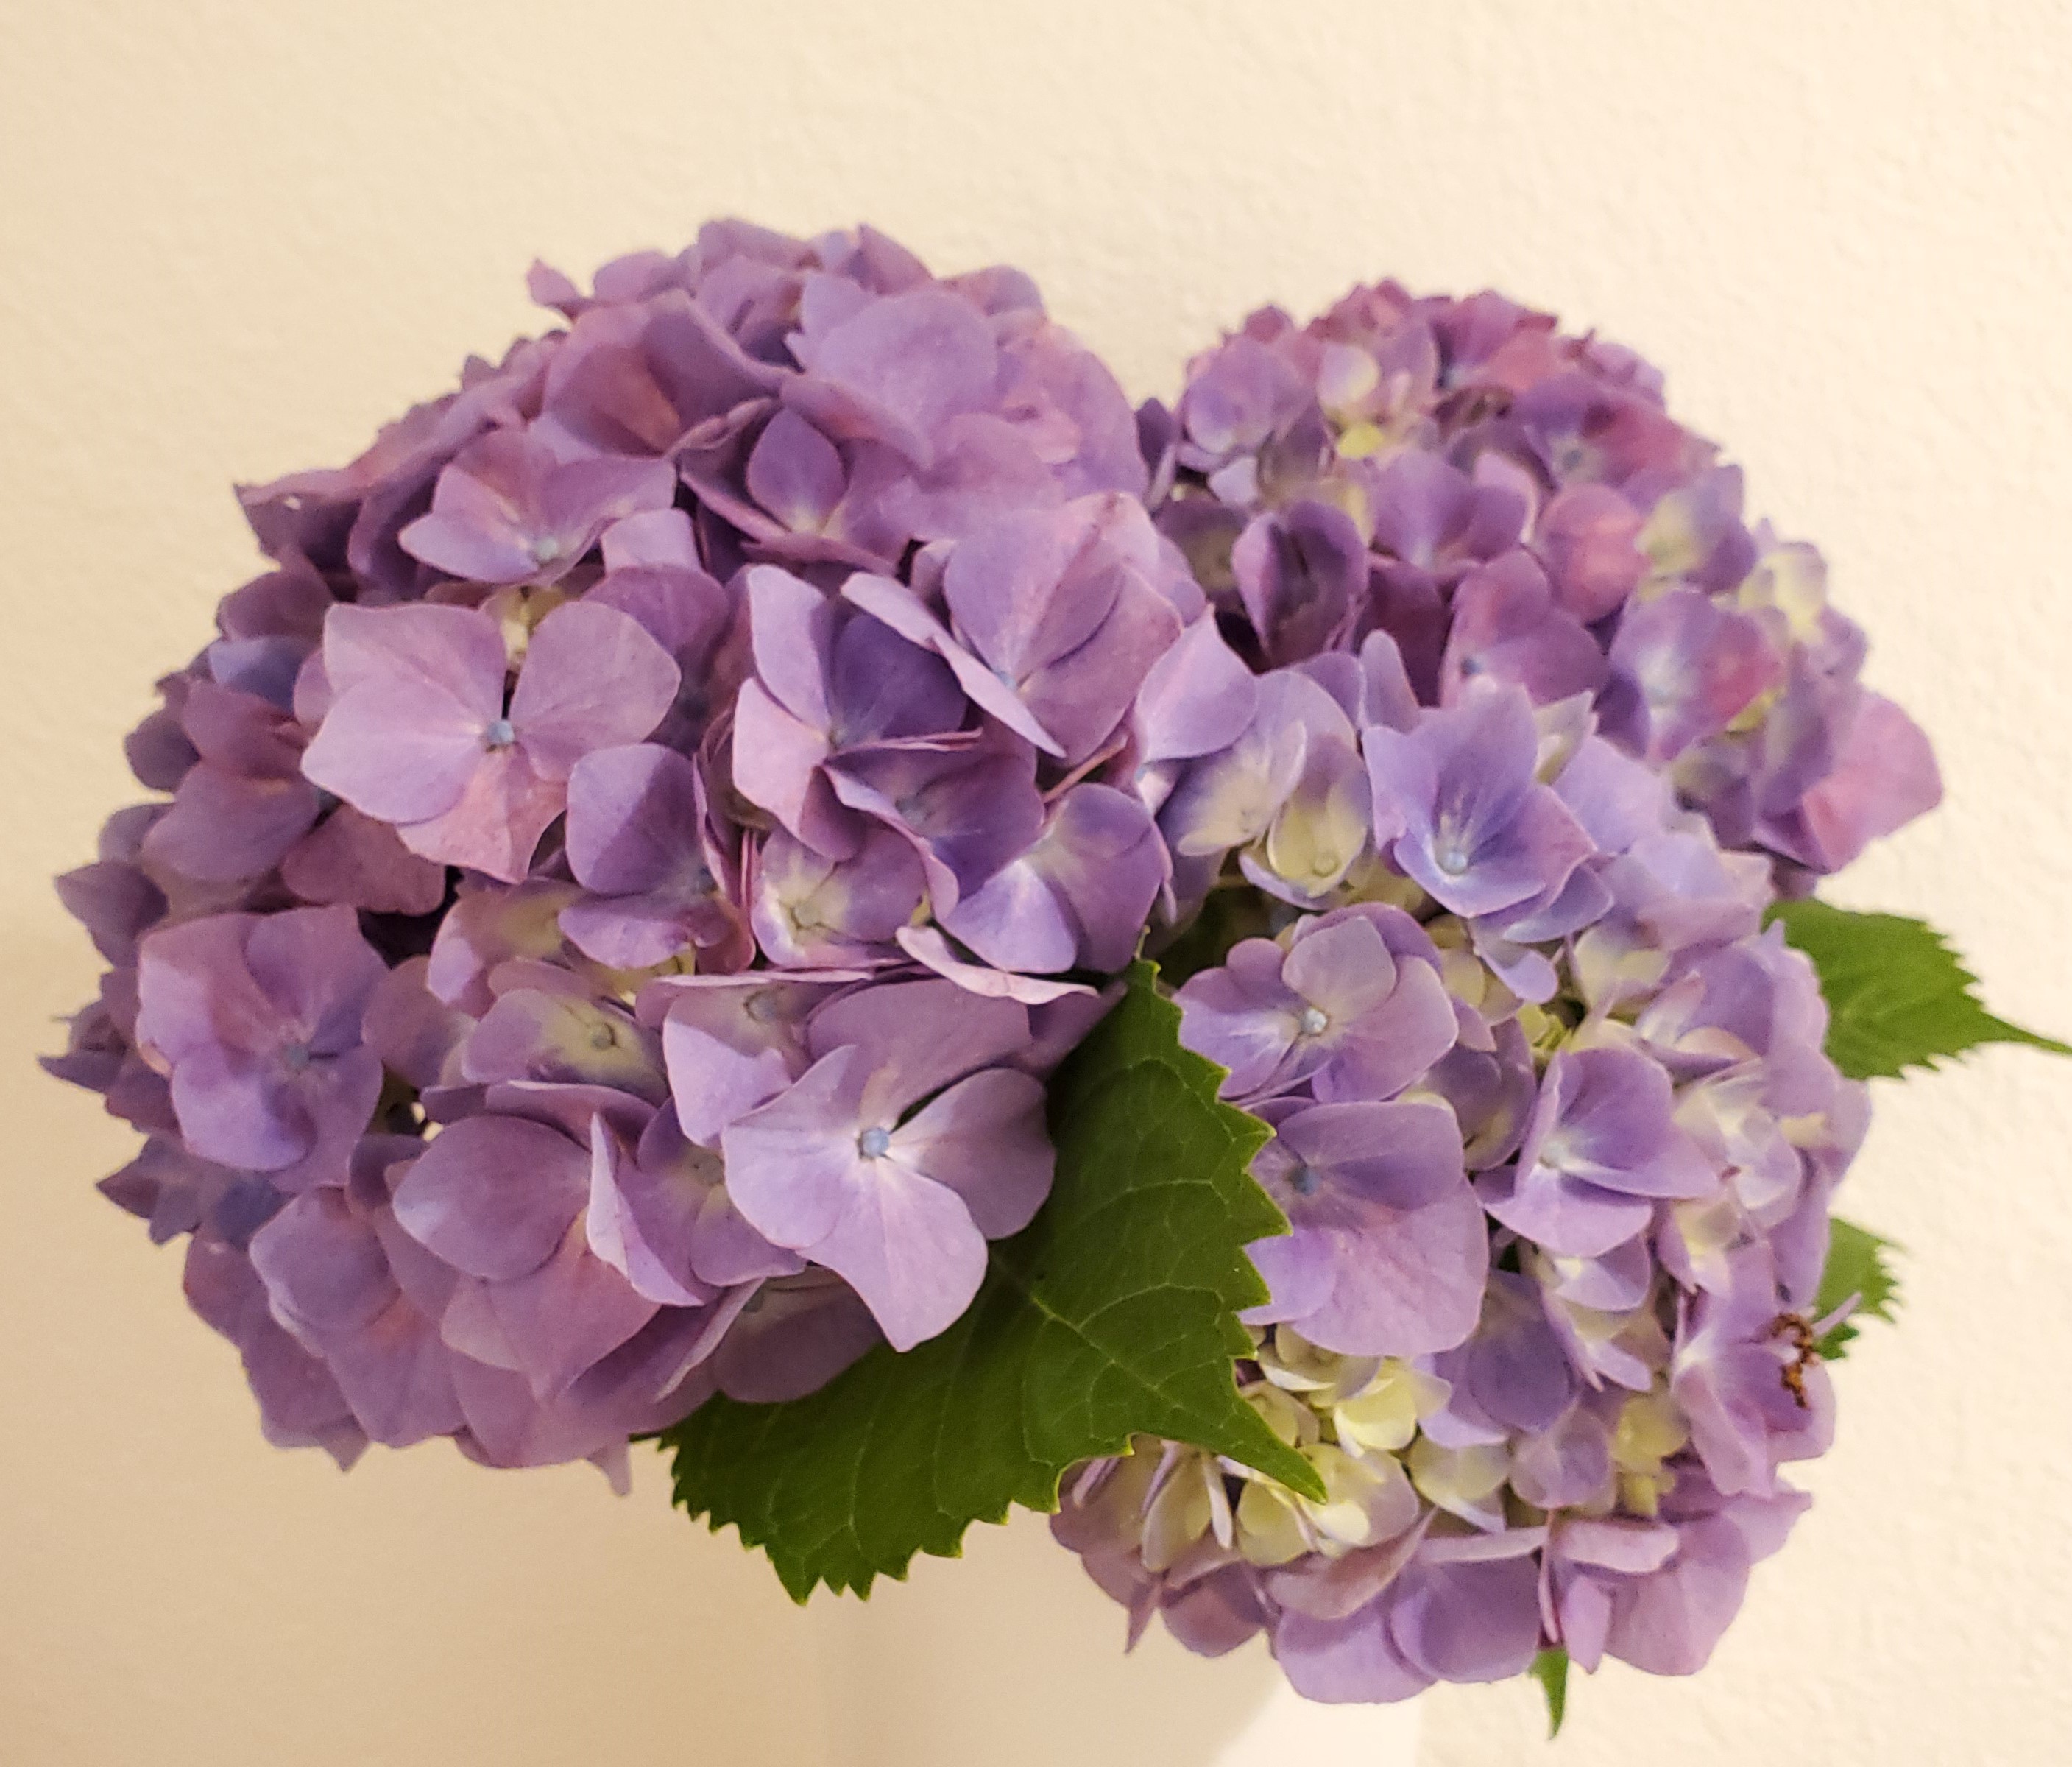 色が変化する カラフルで美しく彩る花 紫陽花 アジサイ のオススメ品種をご紹介 一般社団法人 Nフラワーデザインインターナショナル